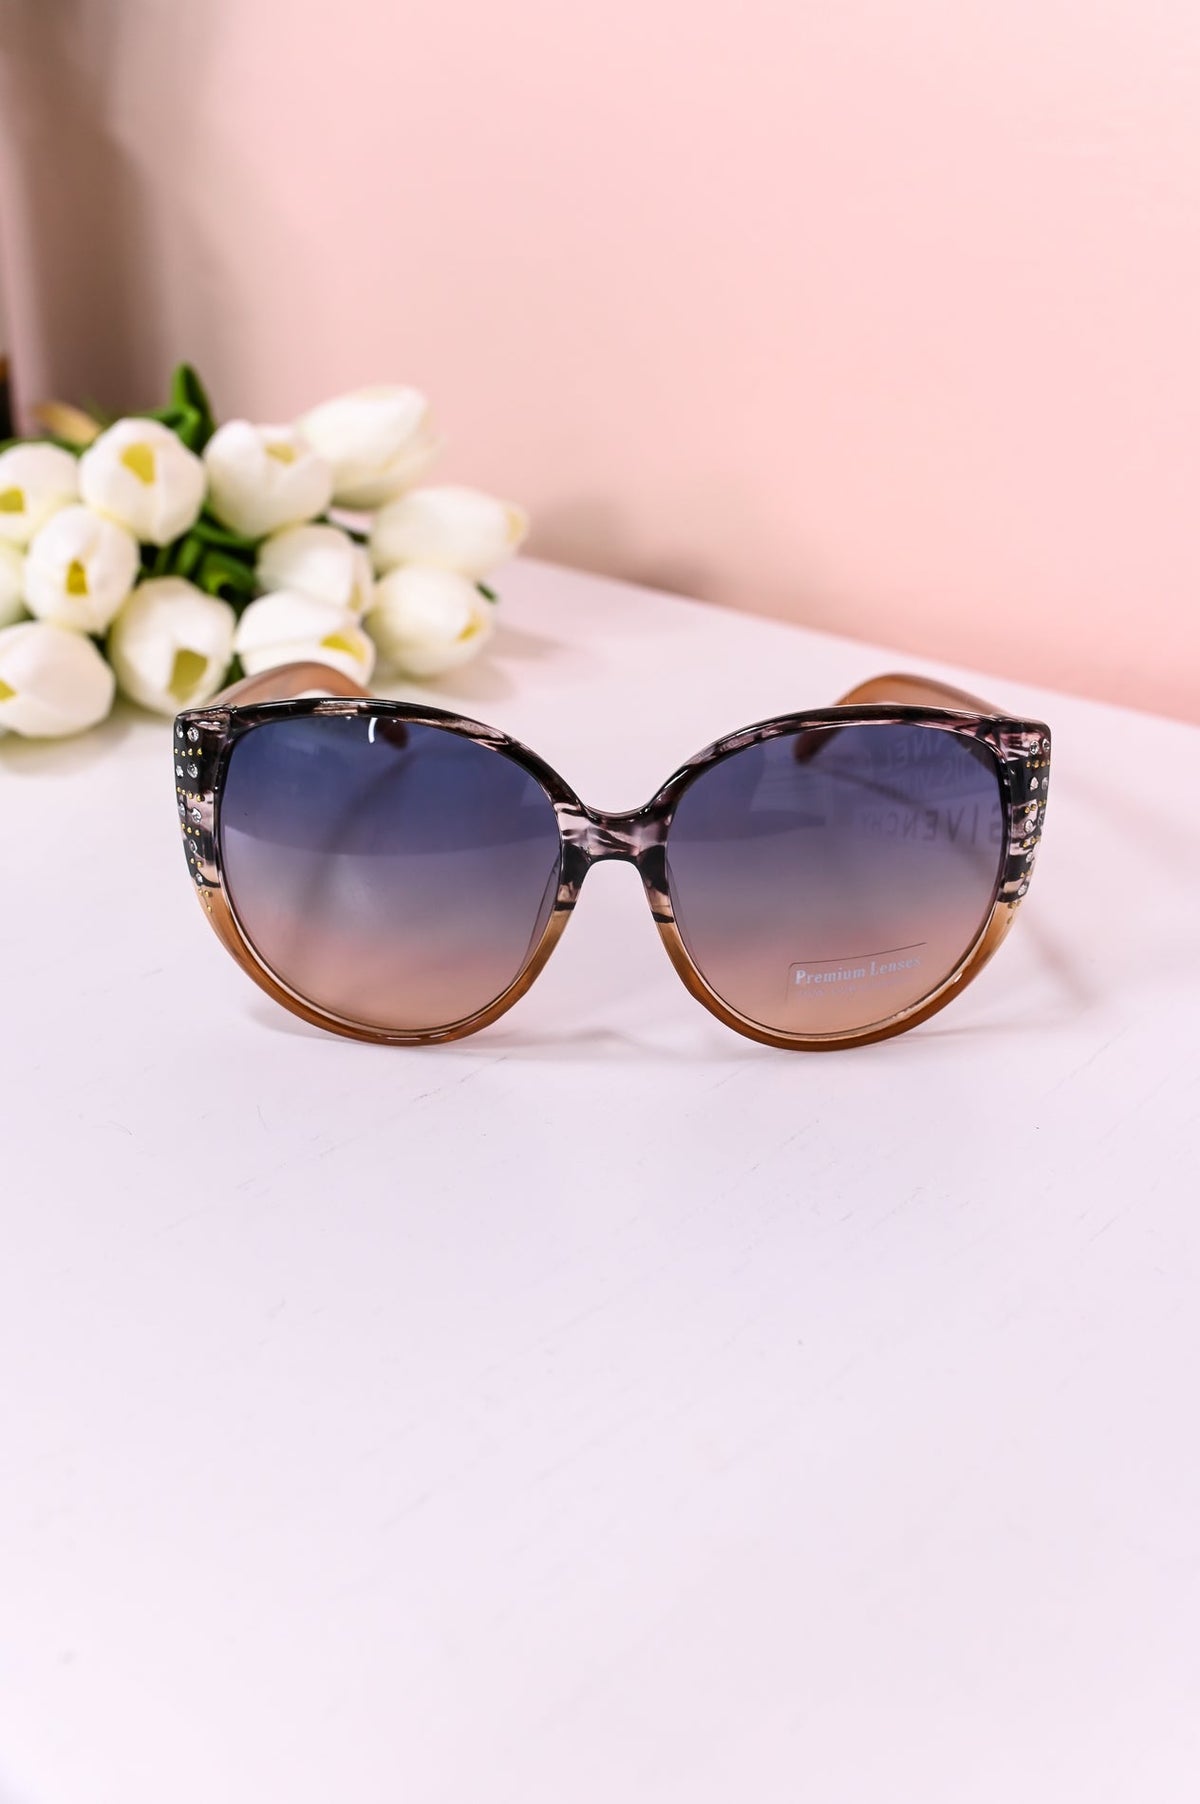 Brown Bling/Studded Oversized Cat Eye Lens Sunglasses - SGL336BR